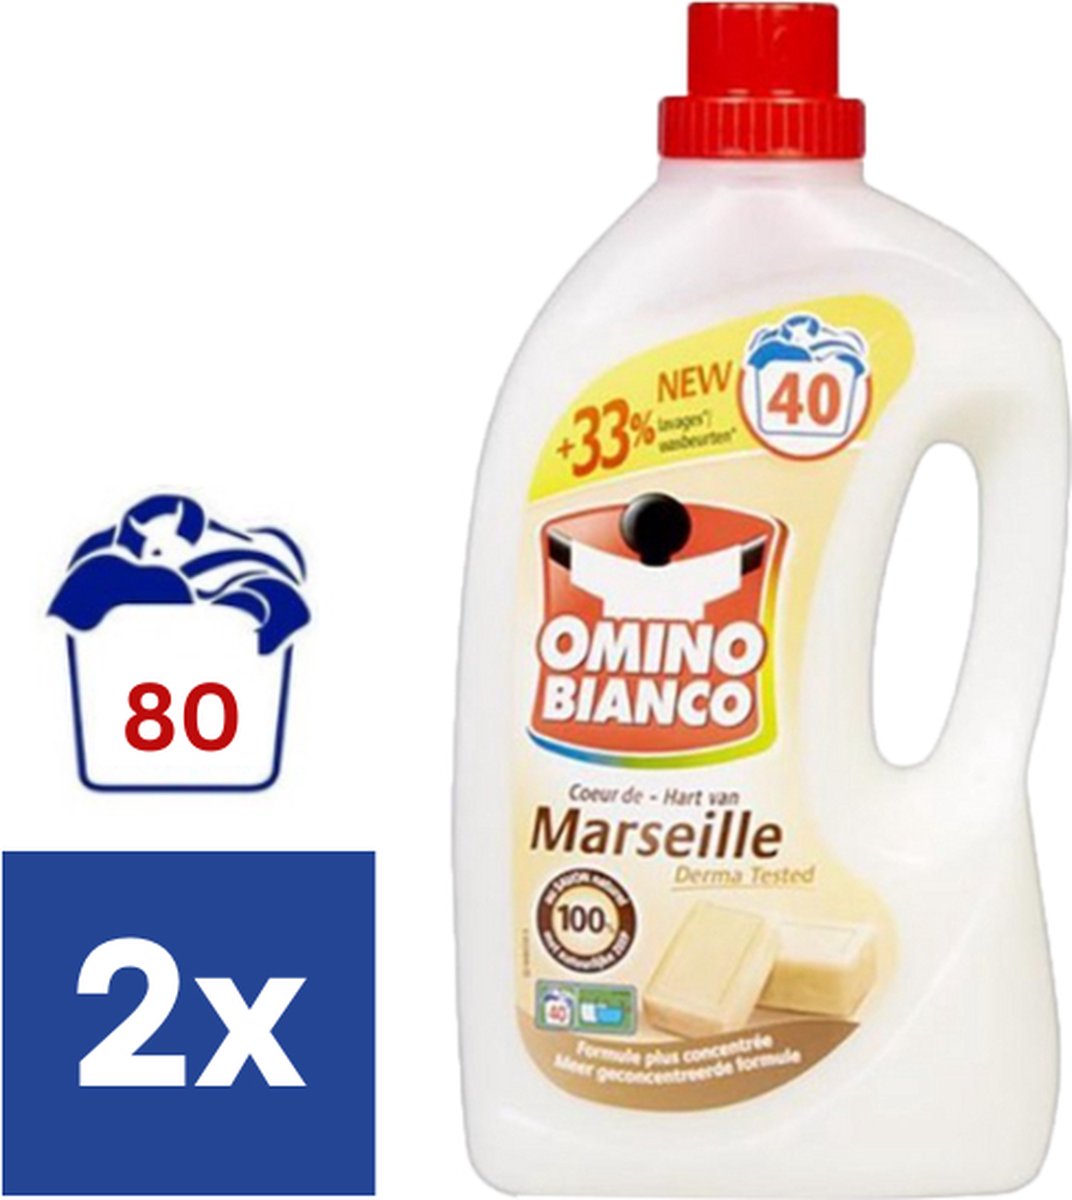 Omino Bianco Hart van Marseille Vloeibaar Wasmiddel - 2 x 2l (80 wasbeurten)